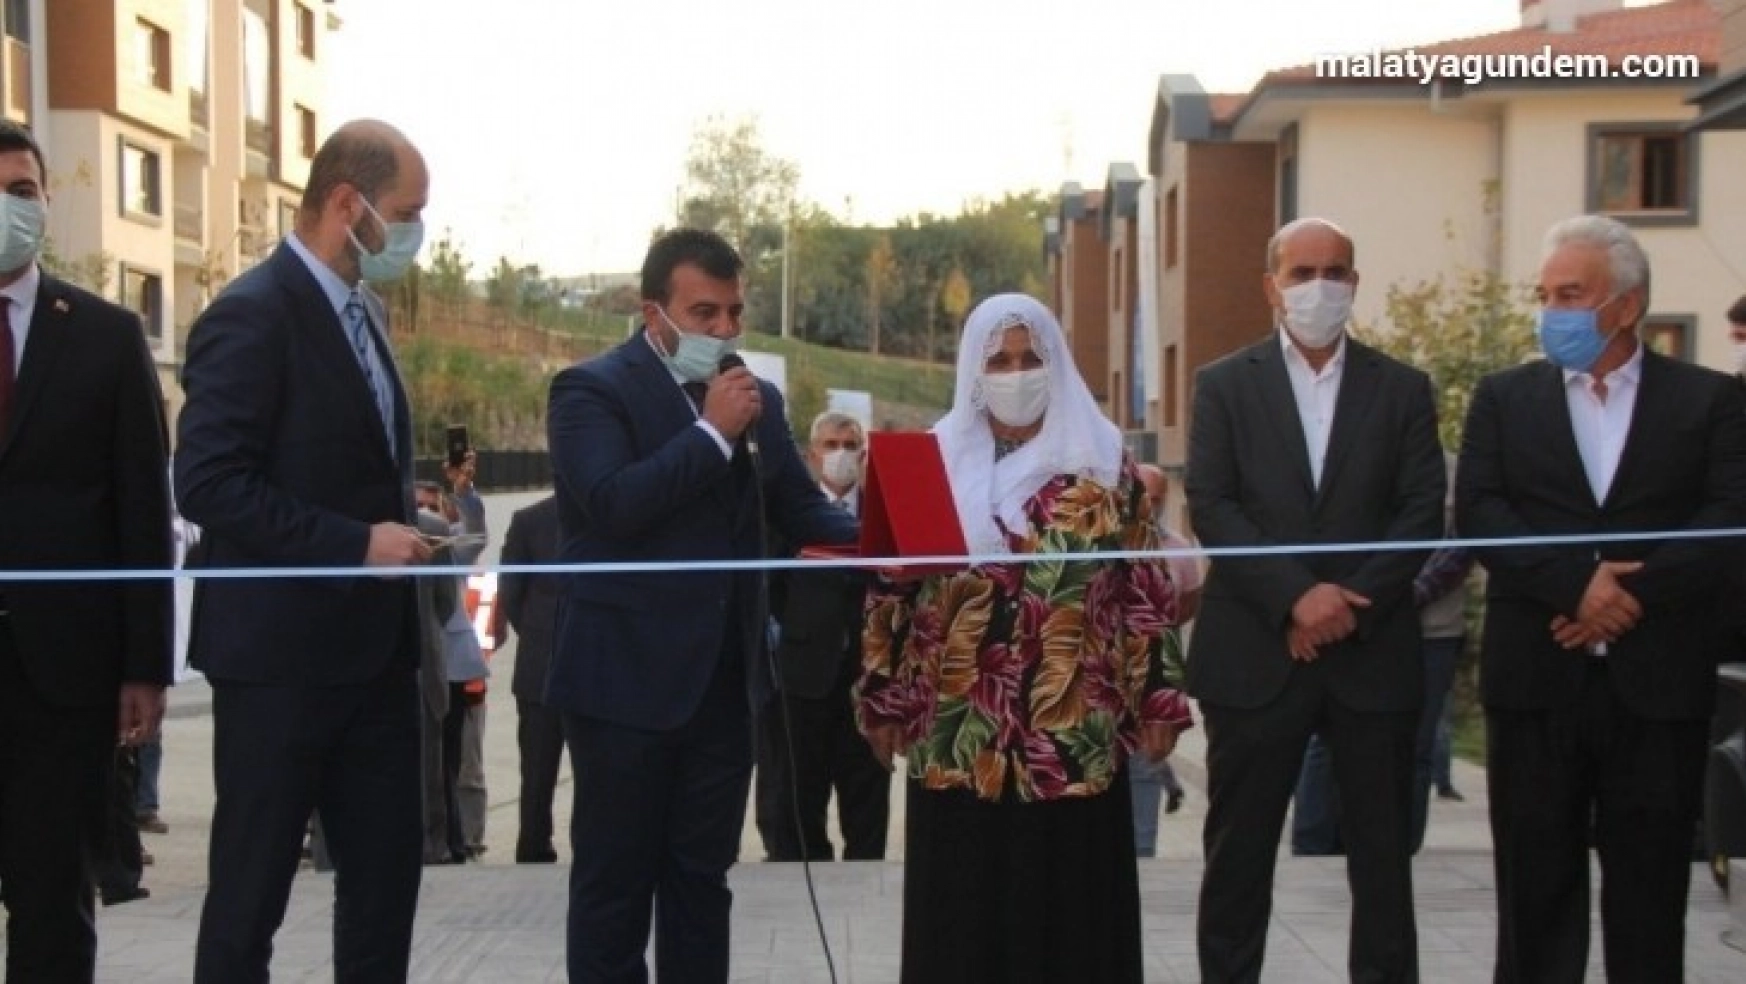 Erdoğan'ın evine gelme sözü verdiği yaşlı kadının tek isteği fotoğraf